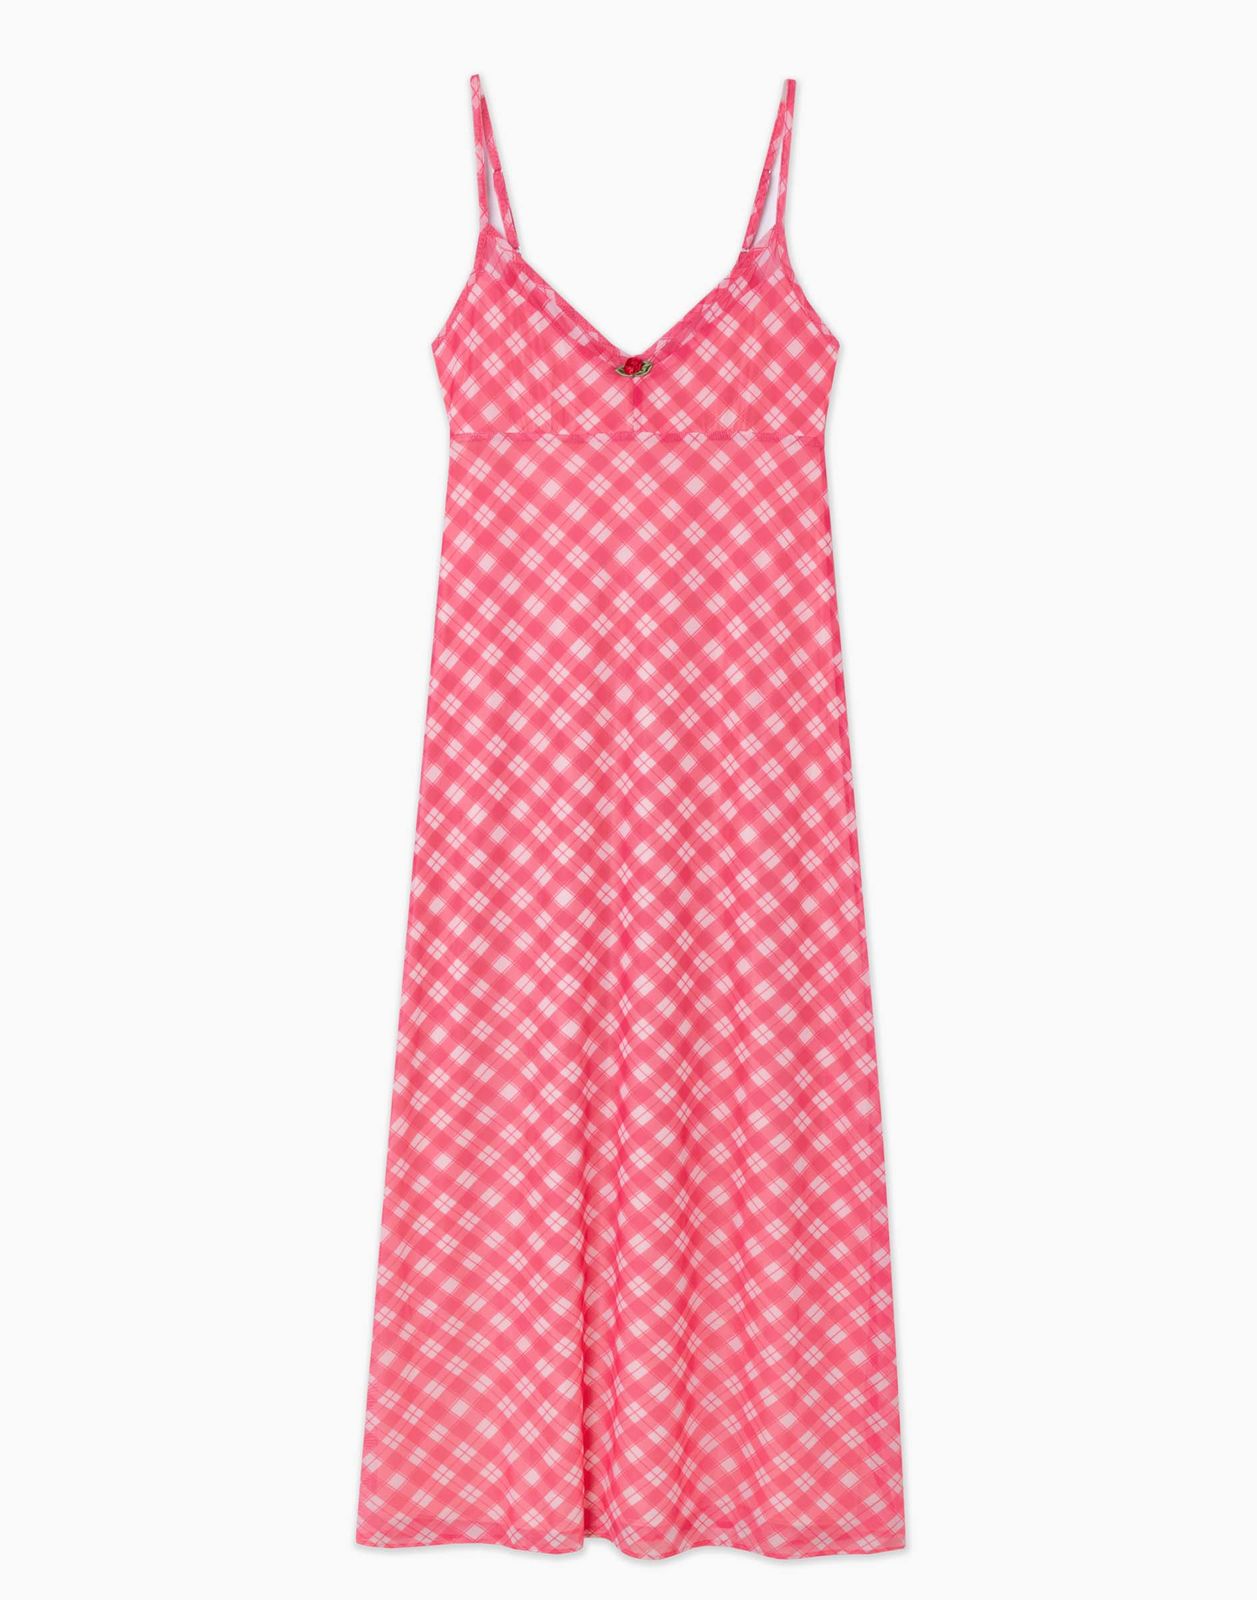 Платье женское Gloria Jeans GDR029057 розовый/разноцветный S/170